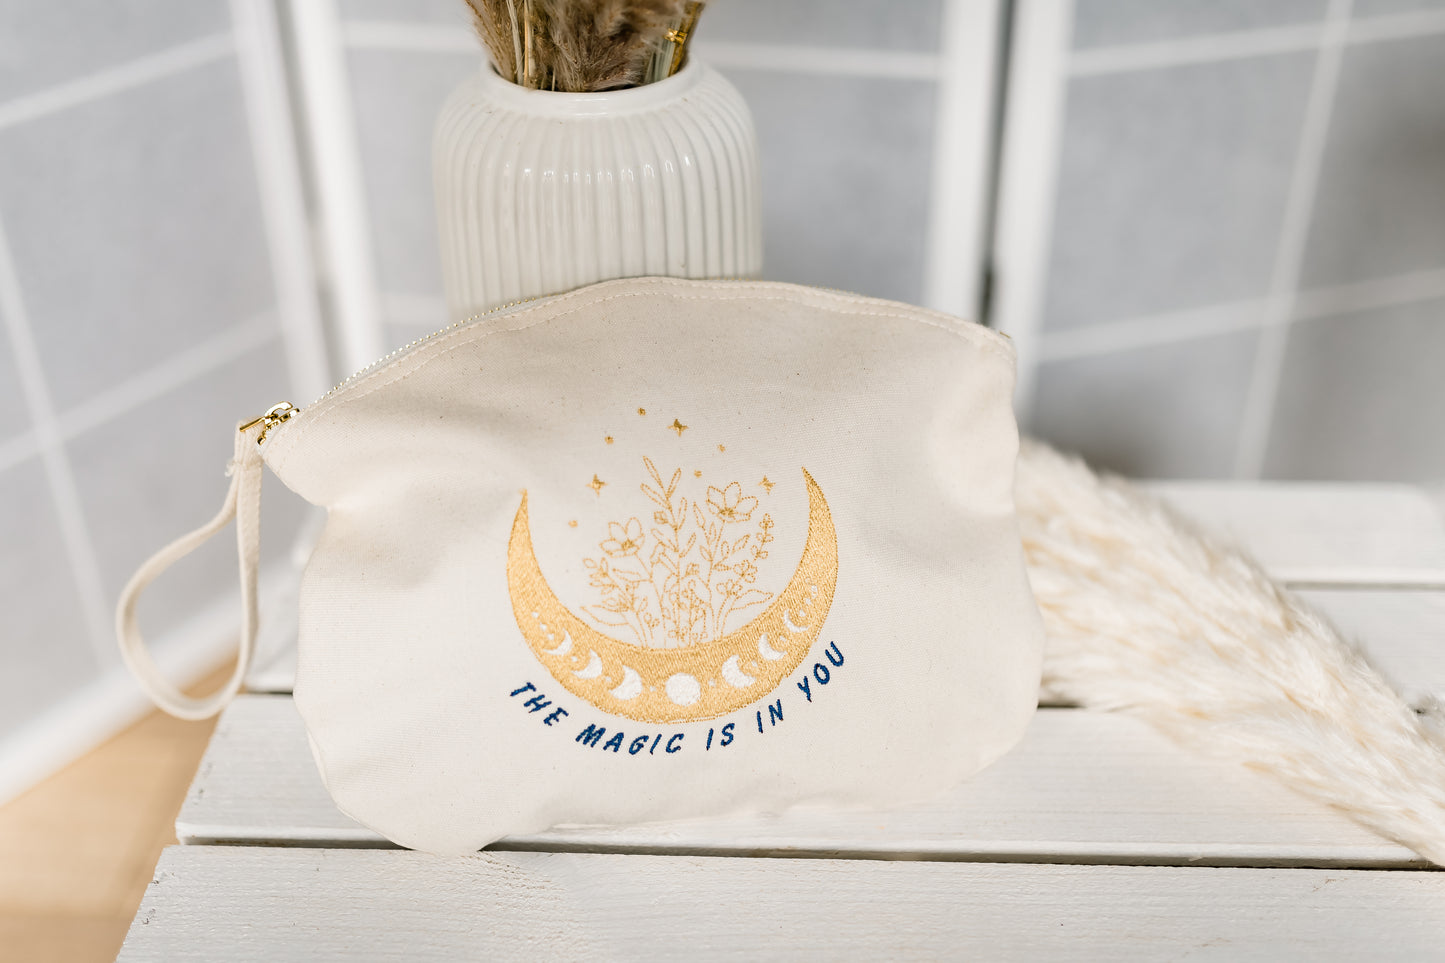 Baumwoll Täschchen mit Reissverschluss, Mond, Mondphasen, Stickerei in Gold, inspirierender Spruch, besondere Textil-Tasche, Geschenkidee Geburtstag Frau